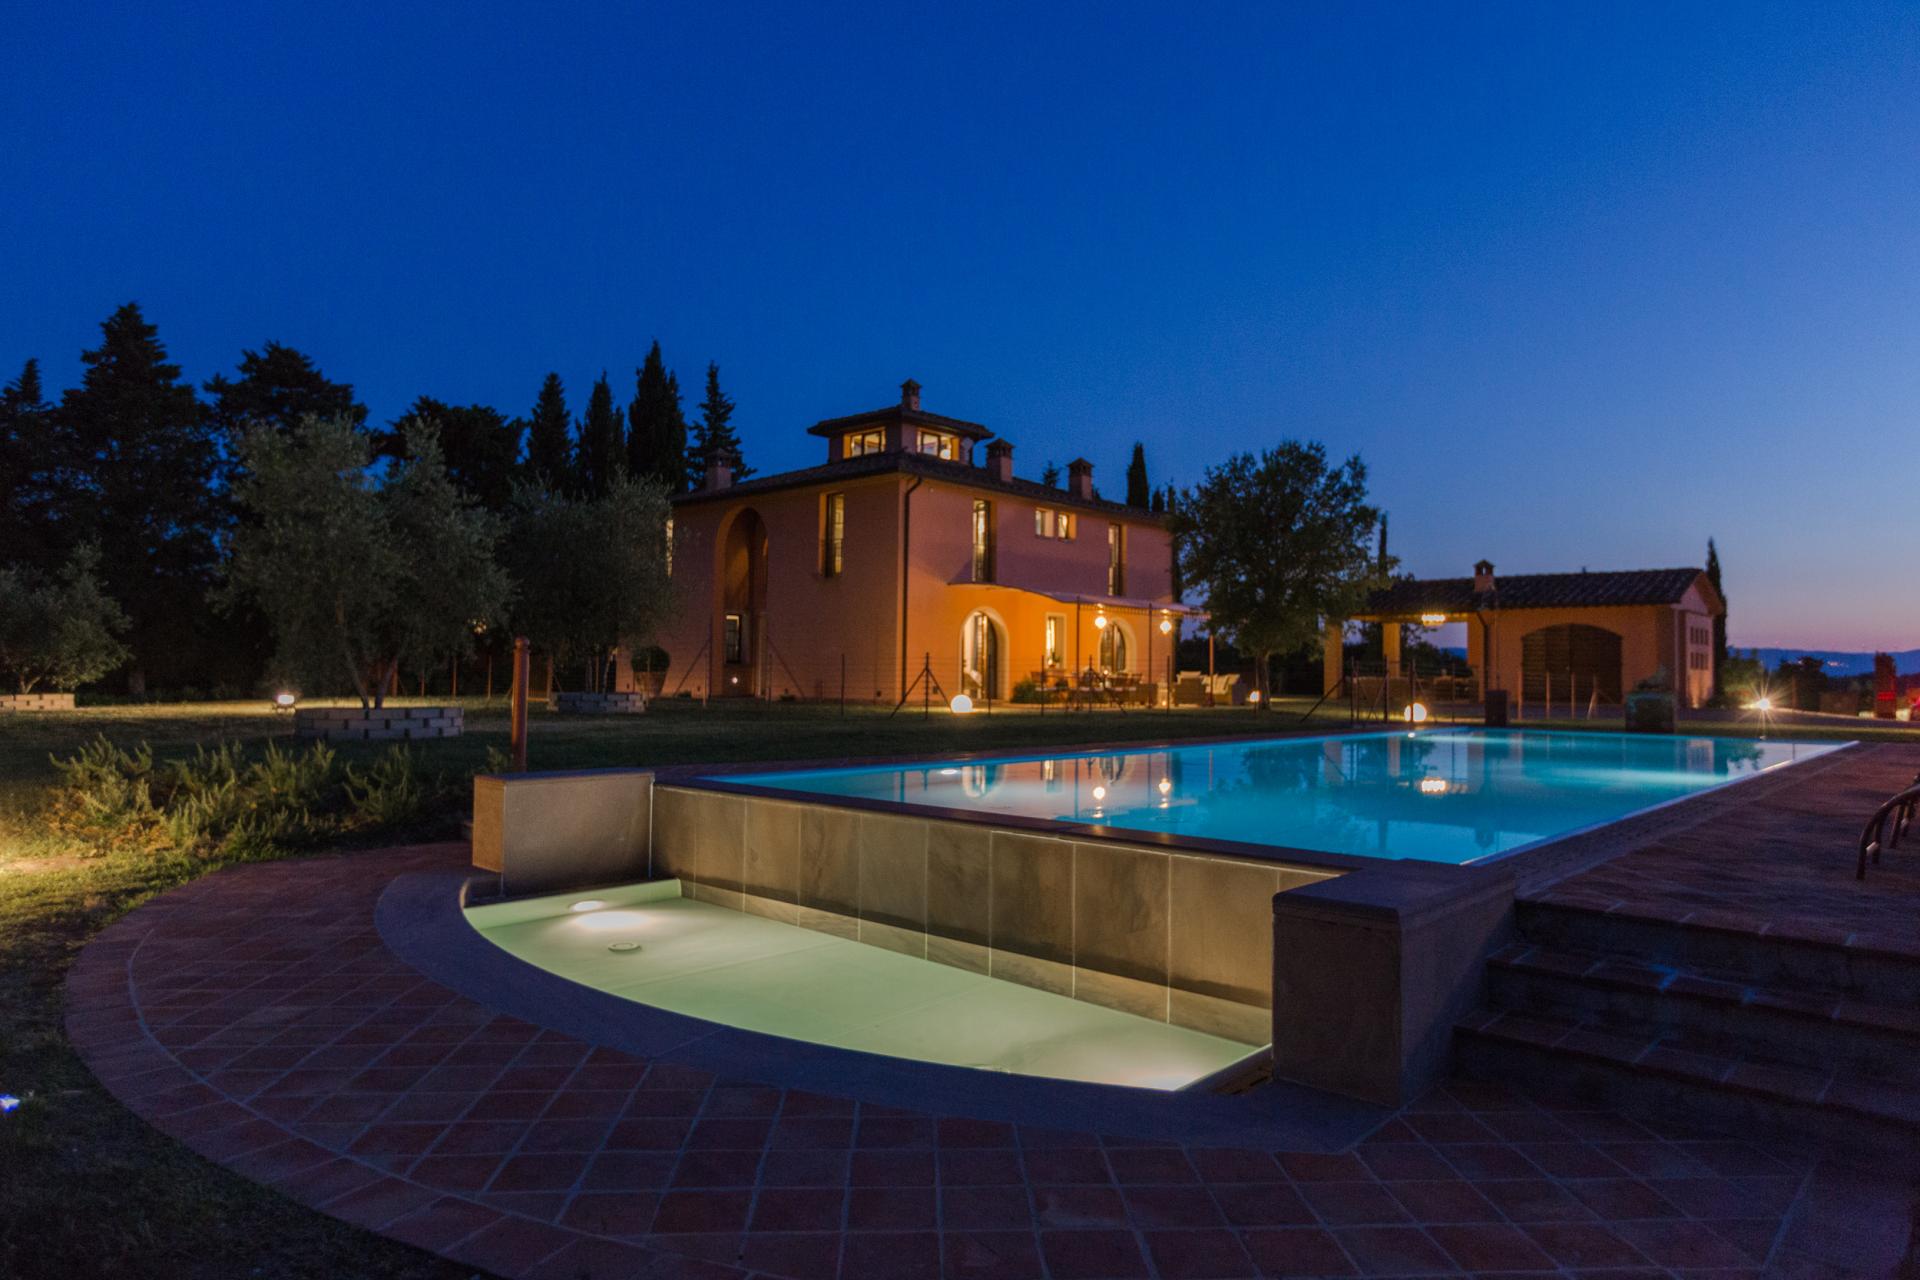 Ferienhaus mit Pool in der Toskana